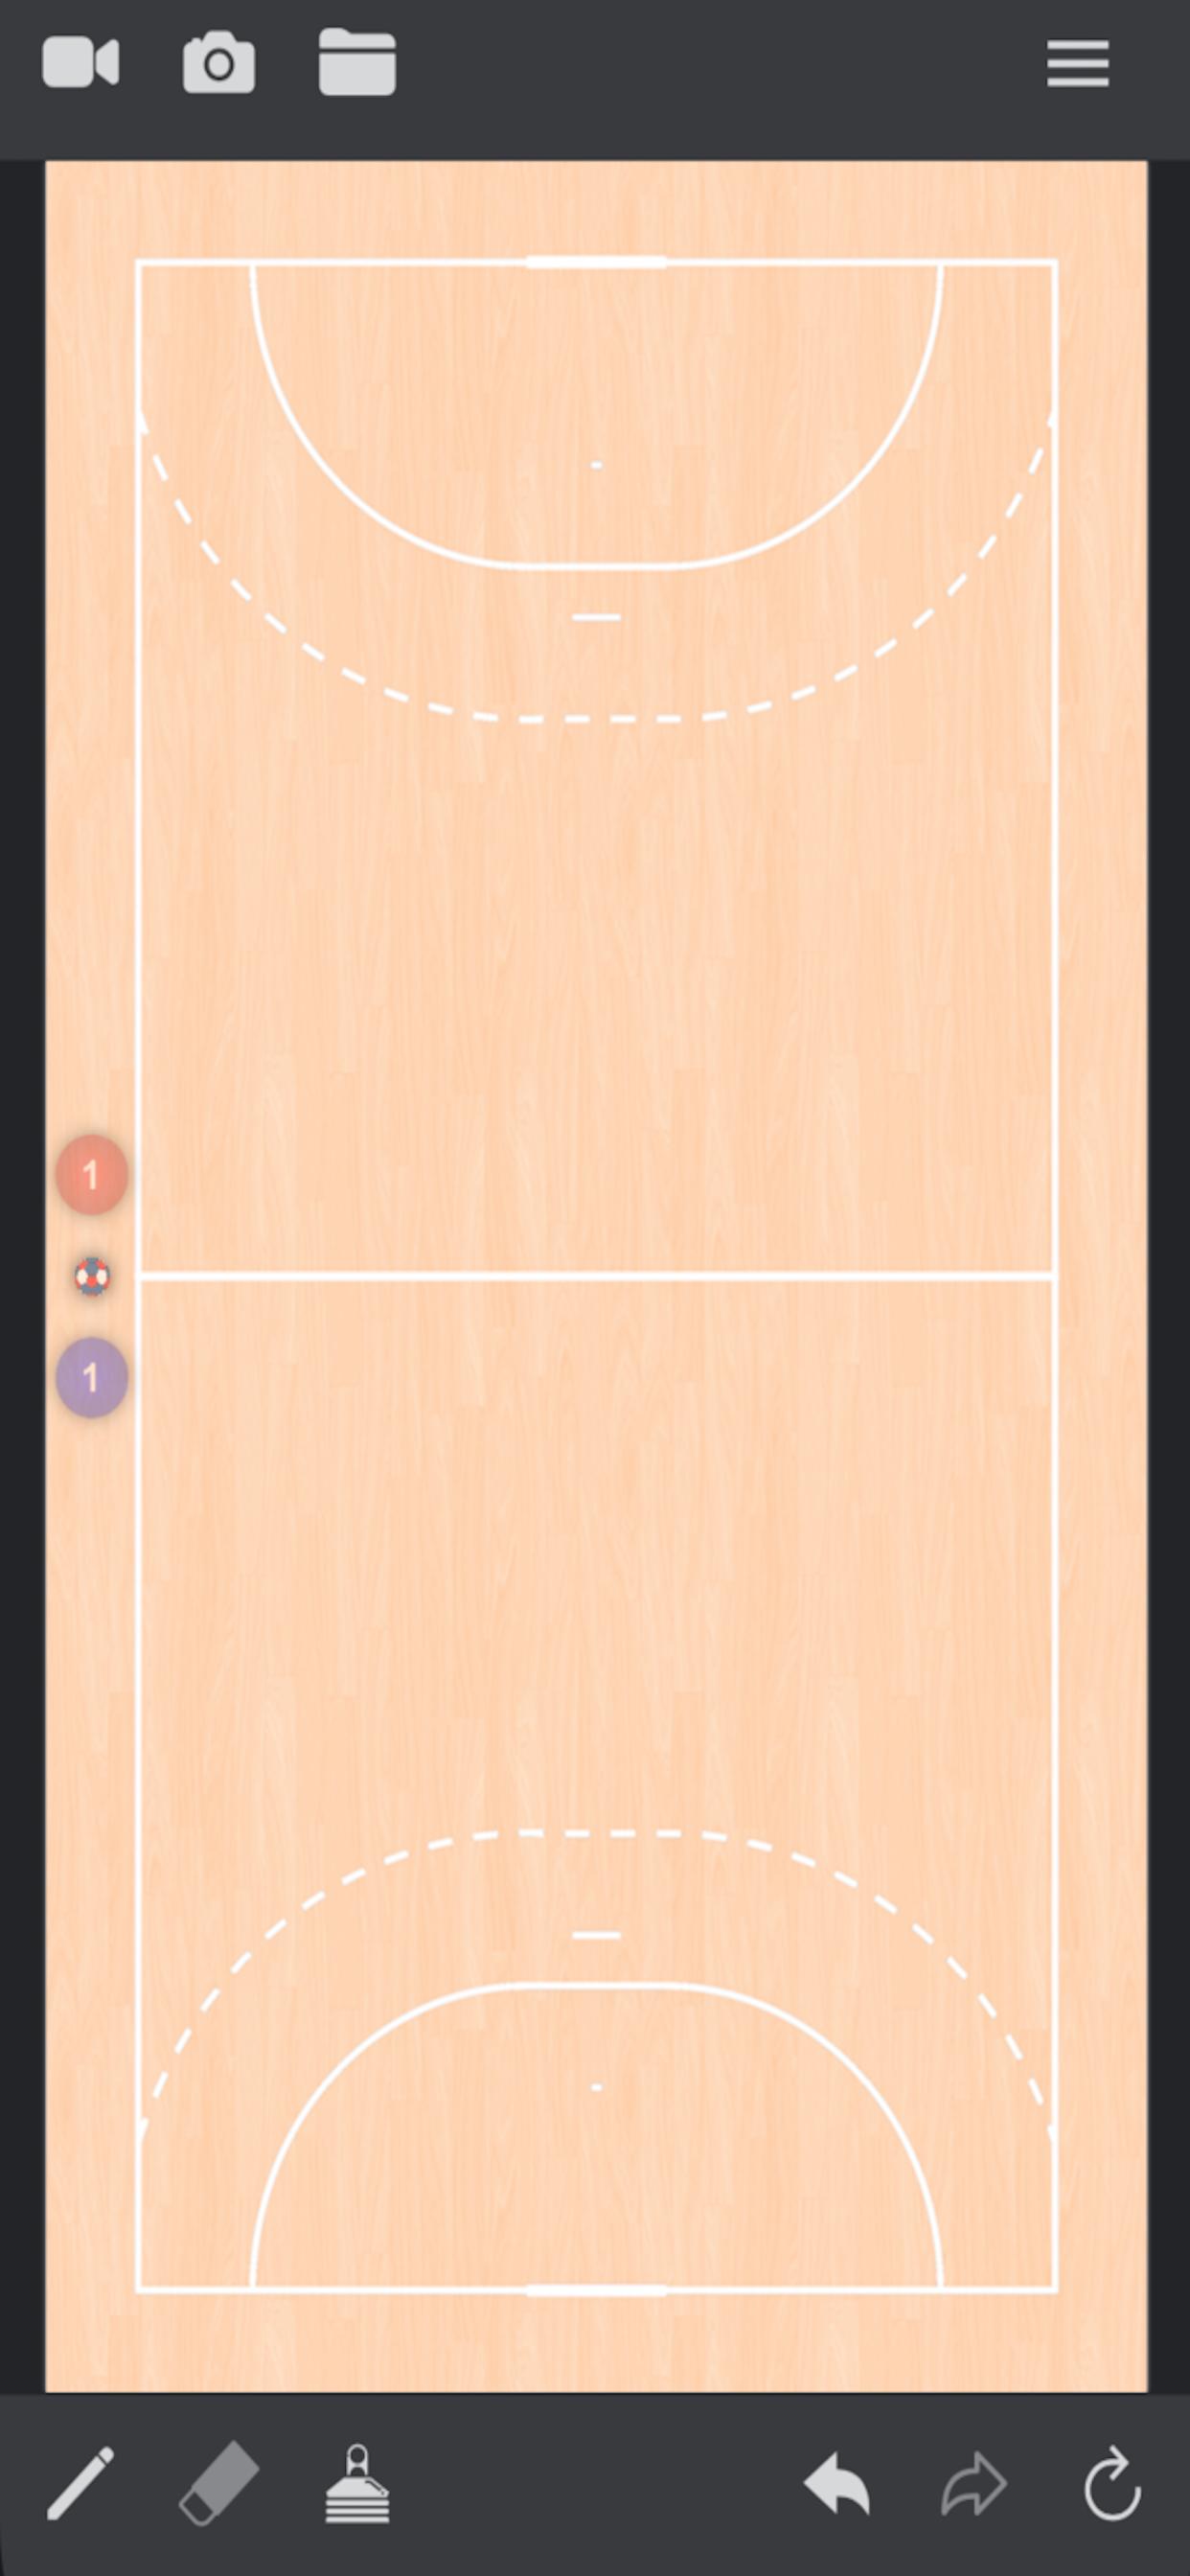 Hey Handball: pizarra táctica de balonmano for Android - APK Download